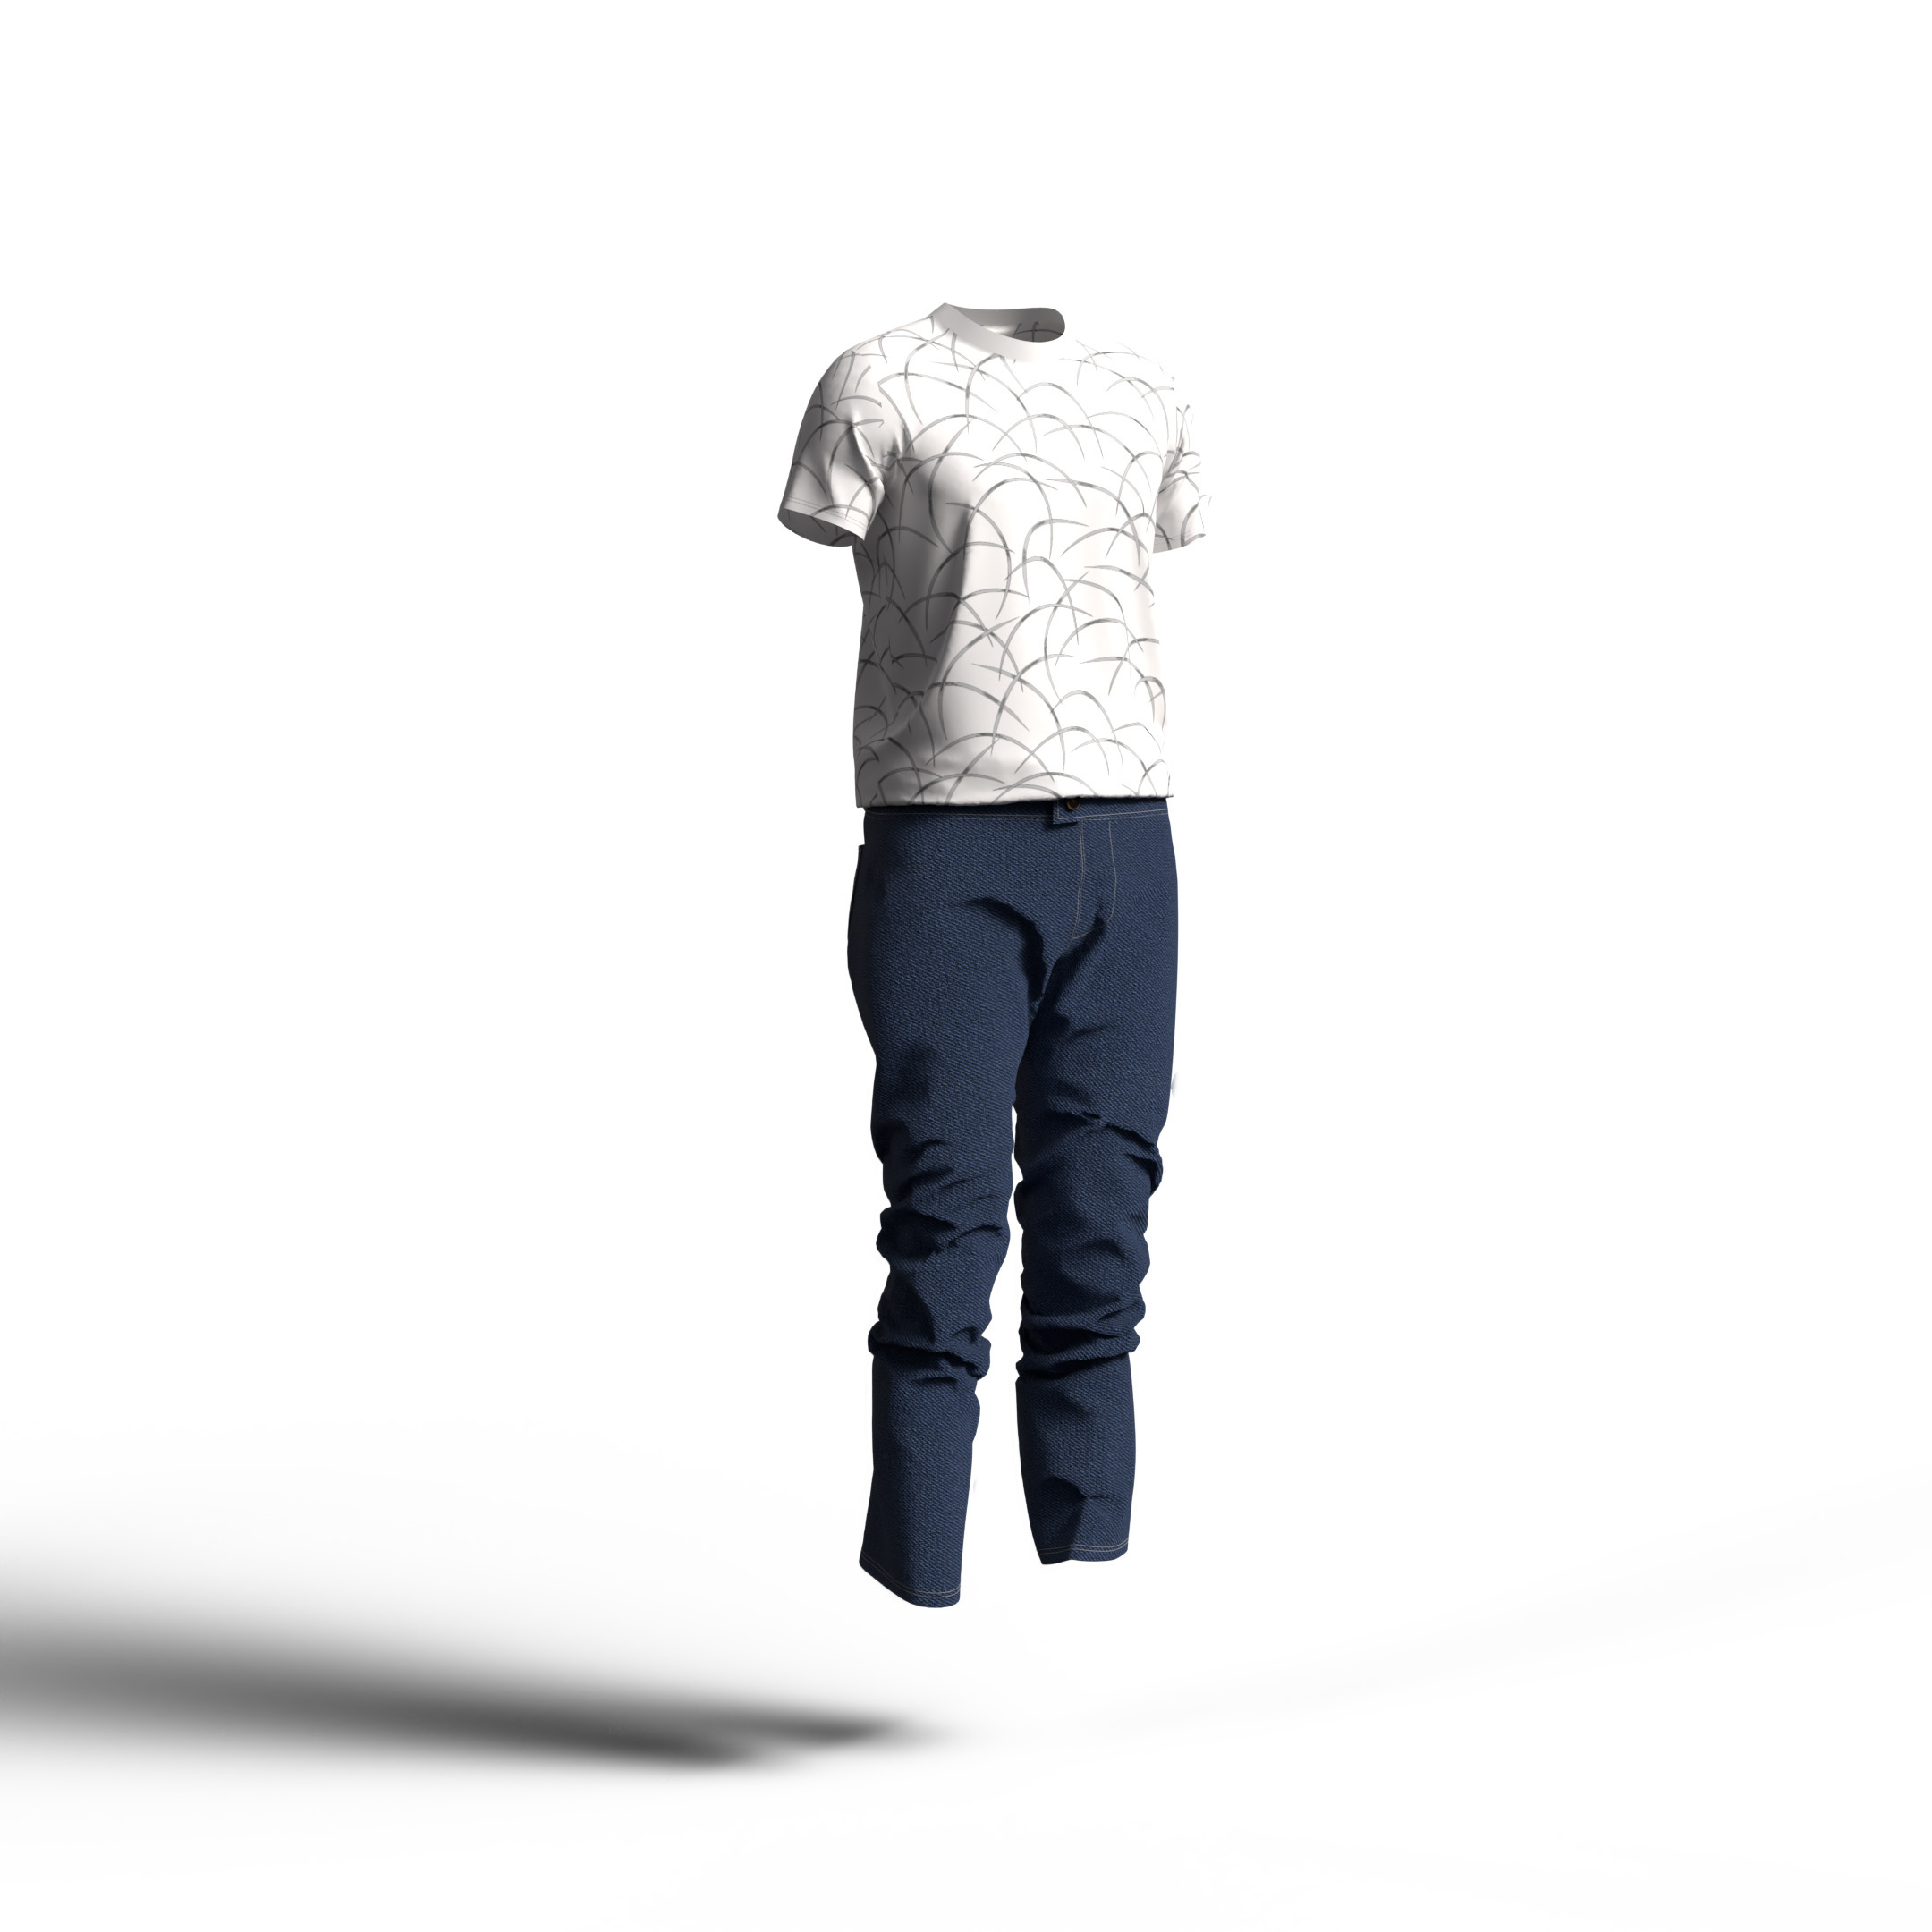 幾何学模様の白Tシャツ×ジーンズ。